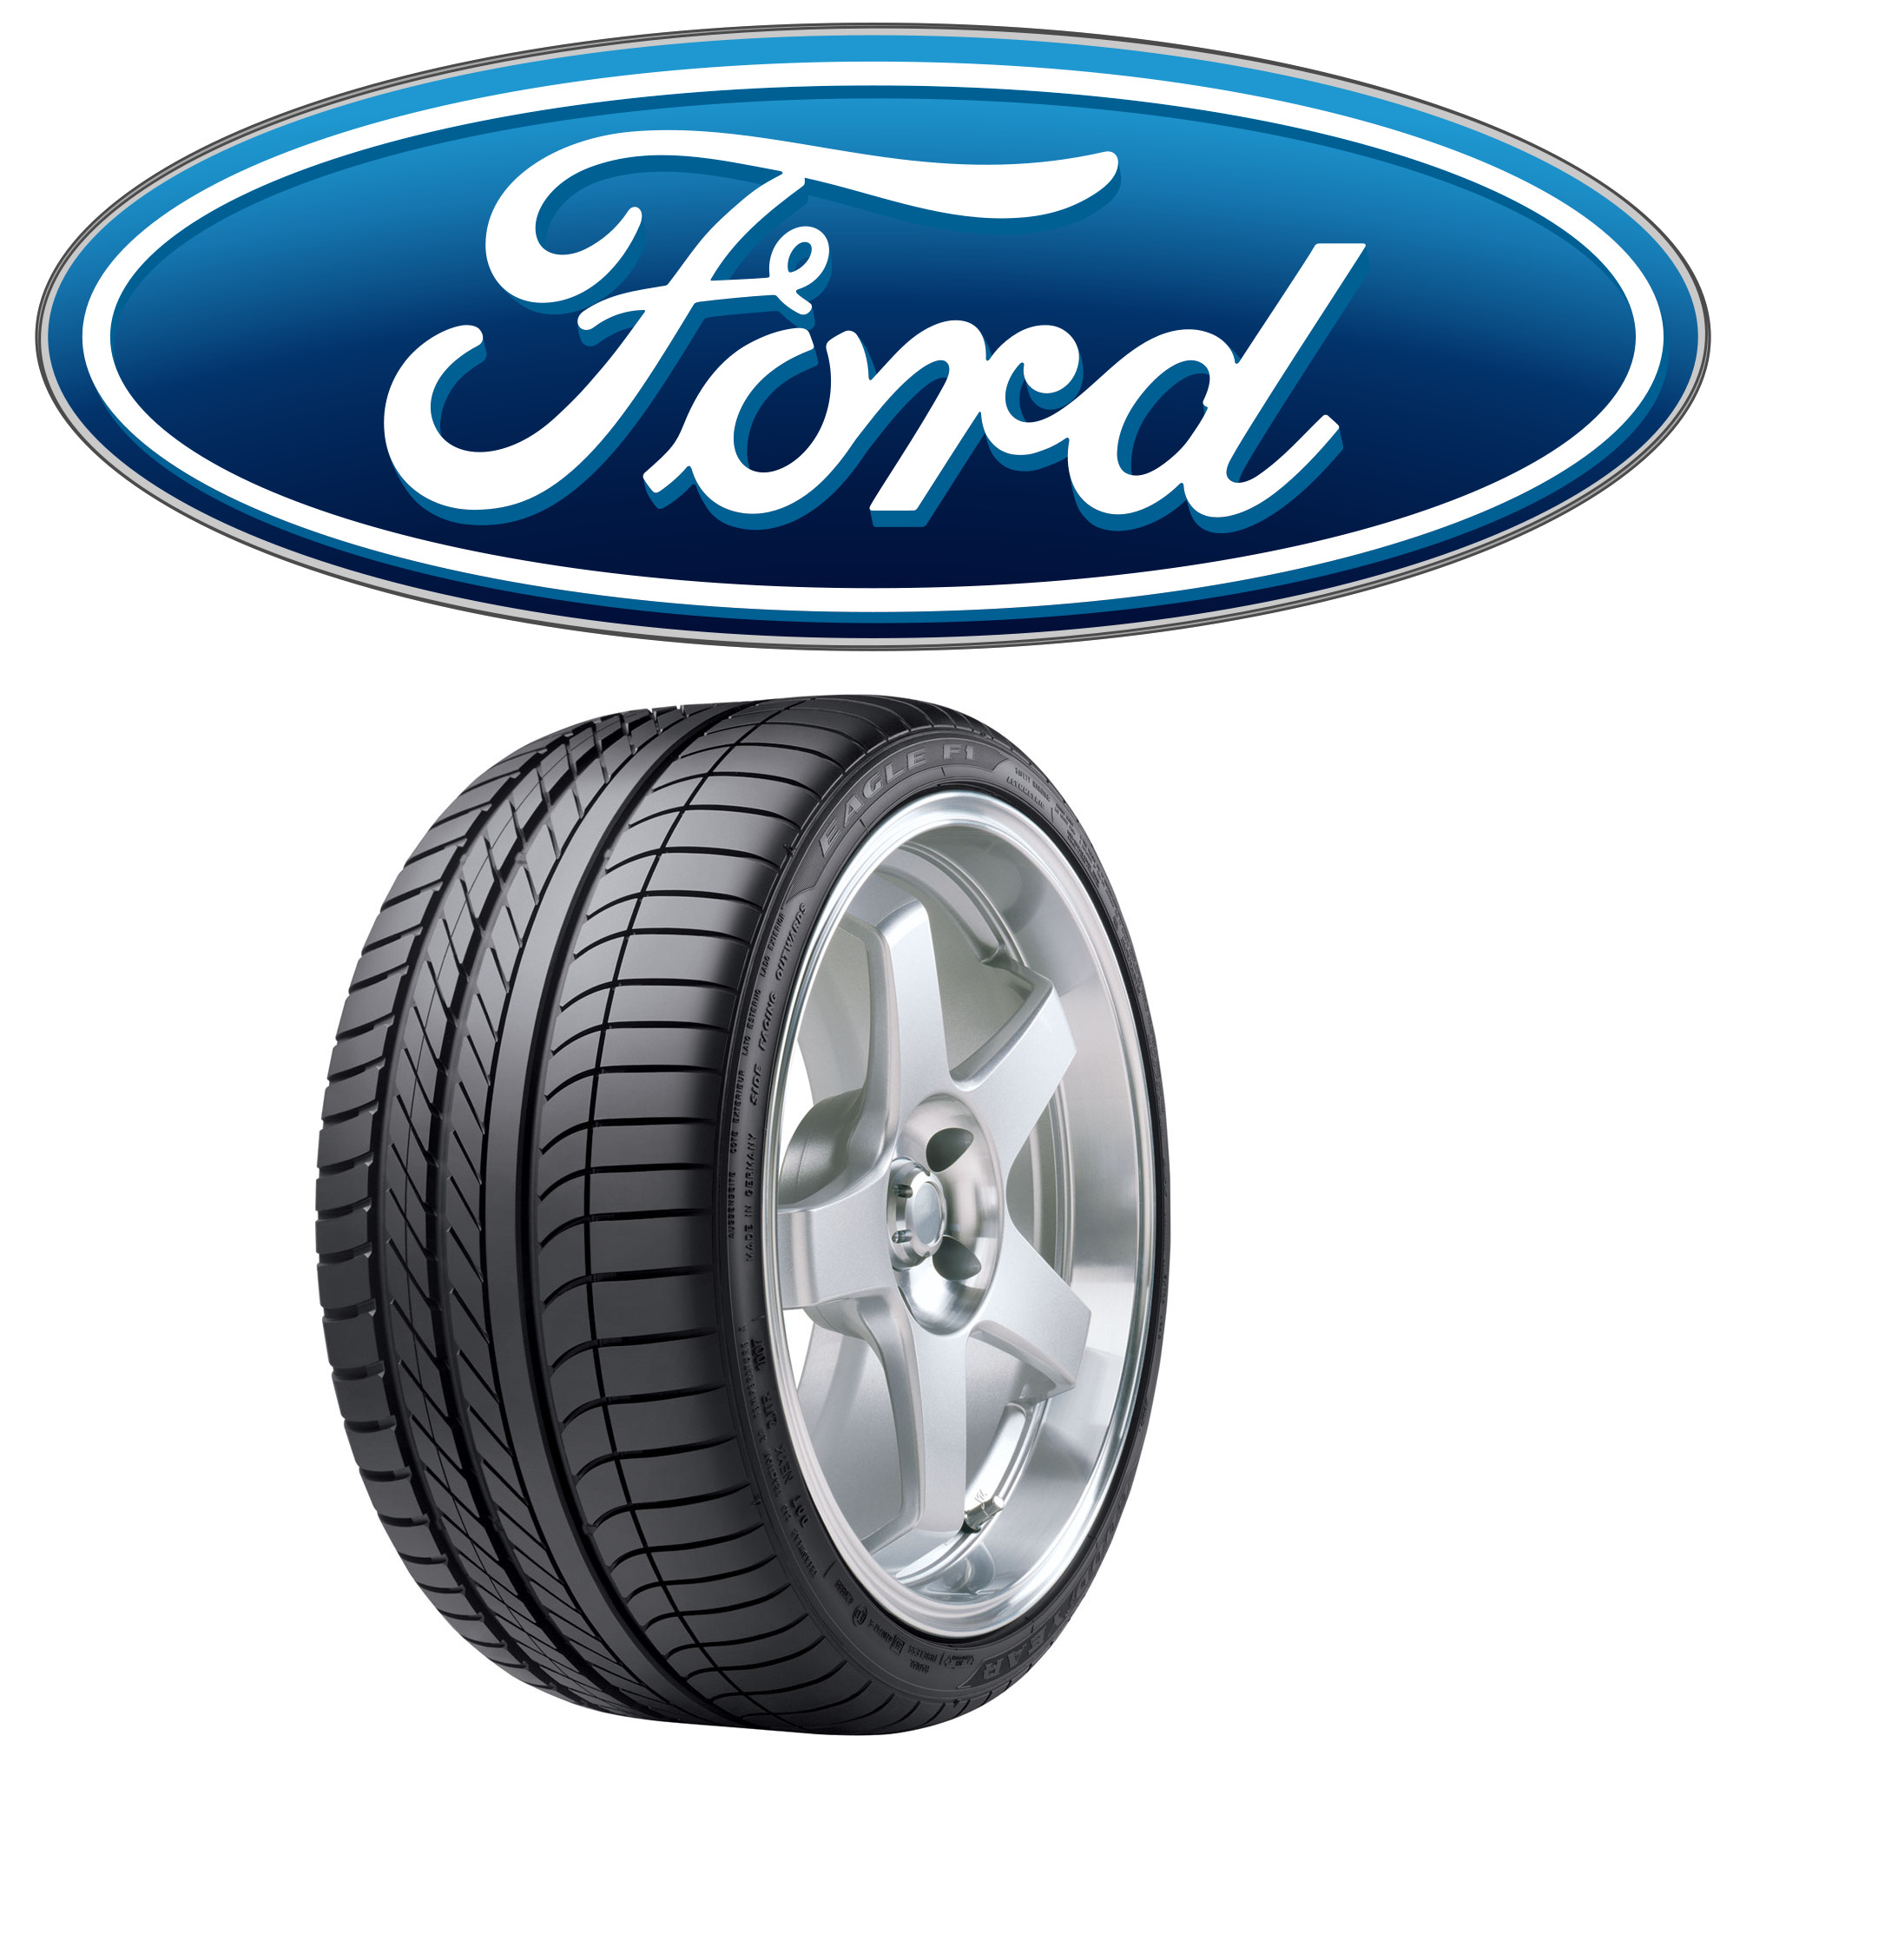 Bảng giá các loại lốp dành cho ô tô Ford cập nhật thị trường tháng 2/2016